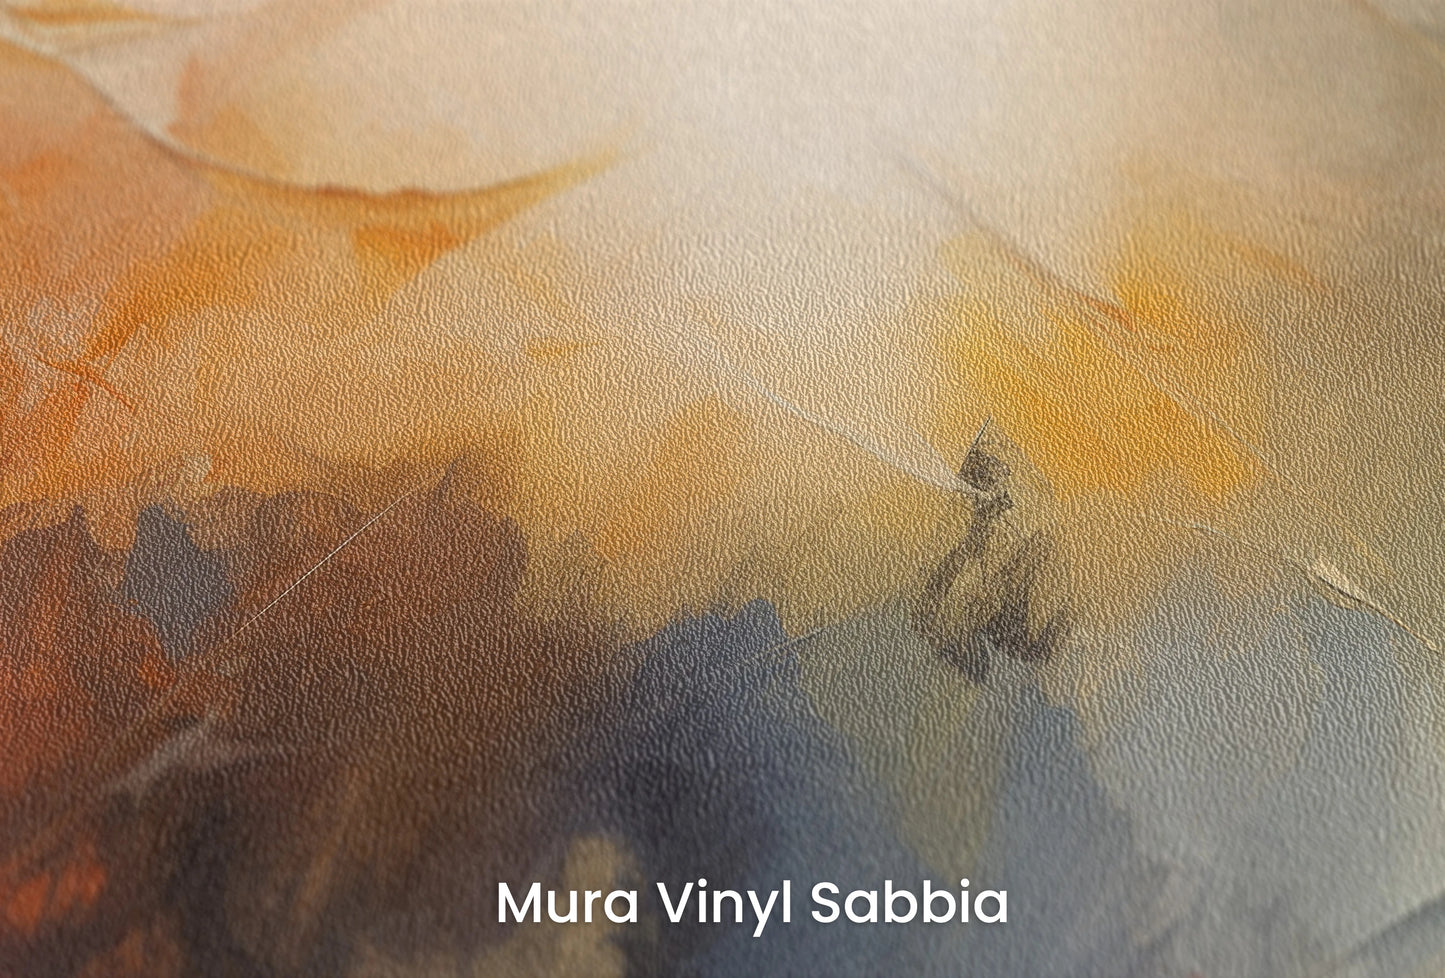 Zbliżenie na artystyczną fototapetę o nazwie Abstract Horizons #2 na podłożu Mura Vinyl Sabbia struktura grubego ziarna piasku.